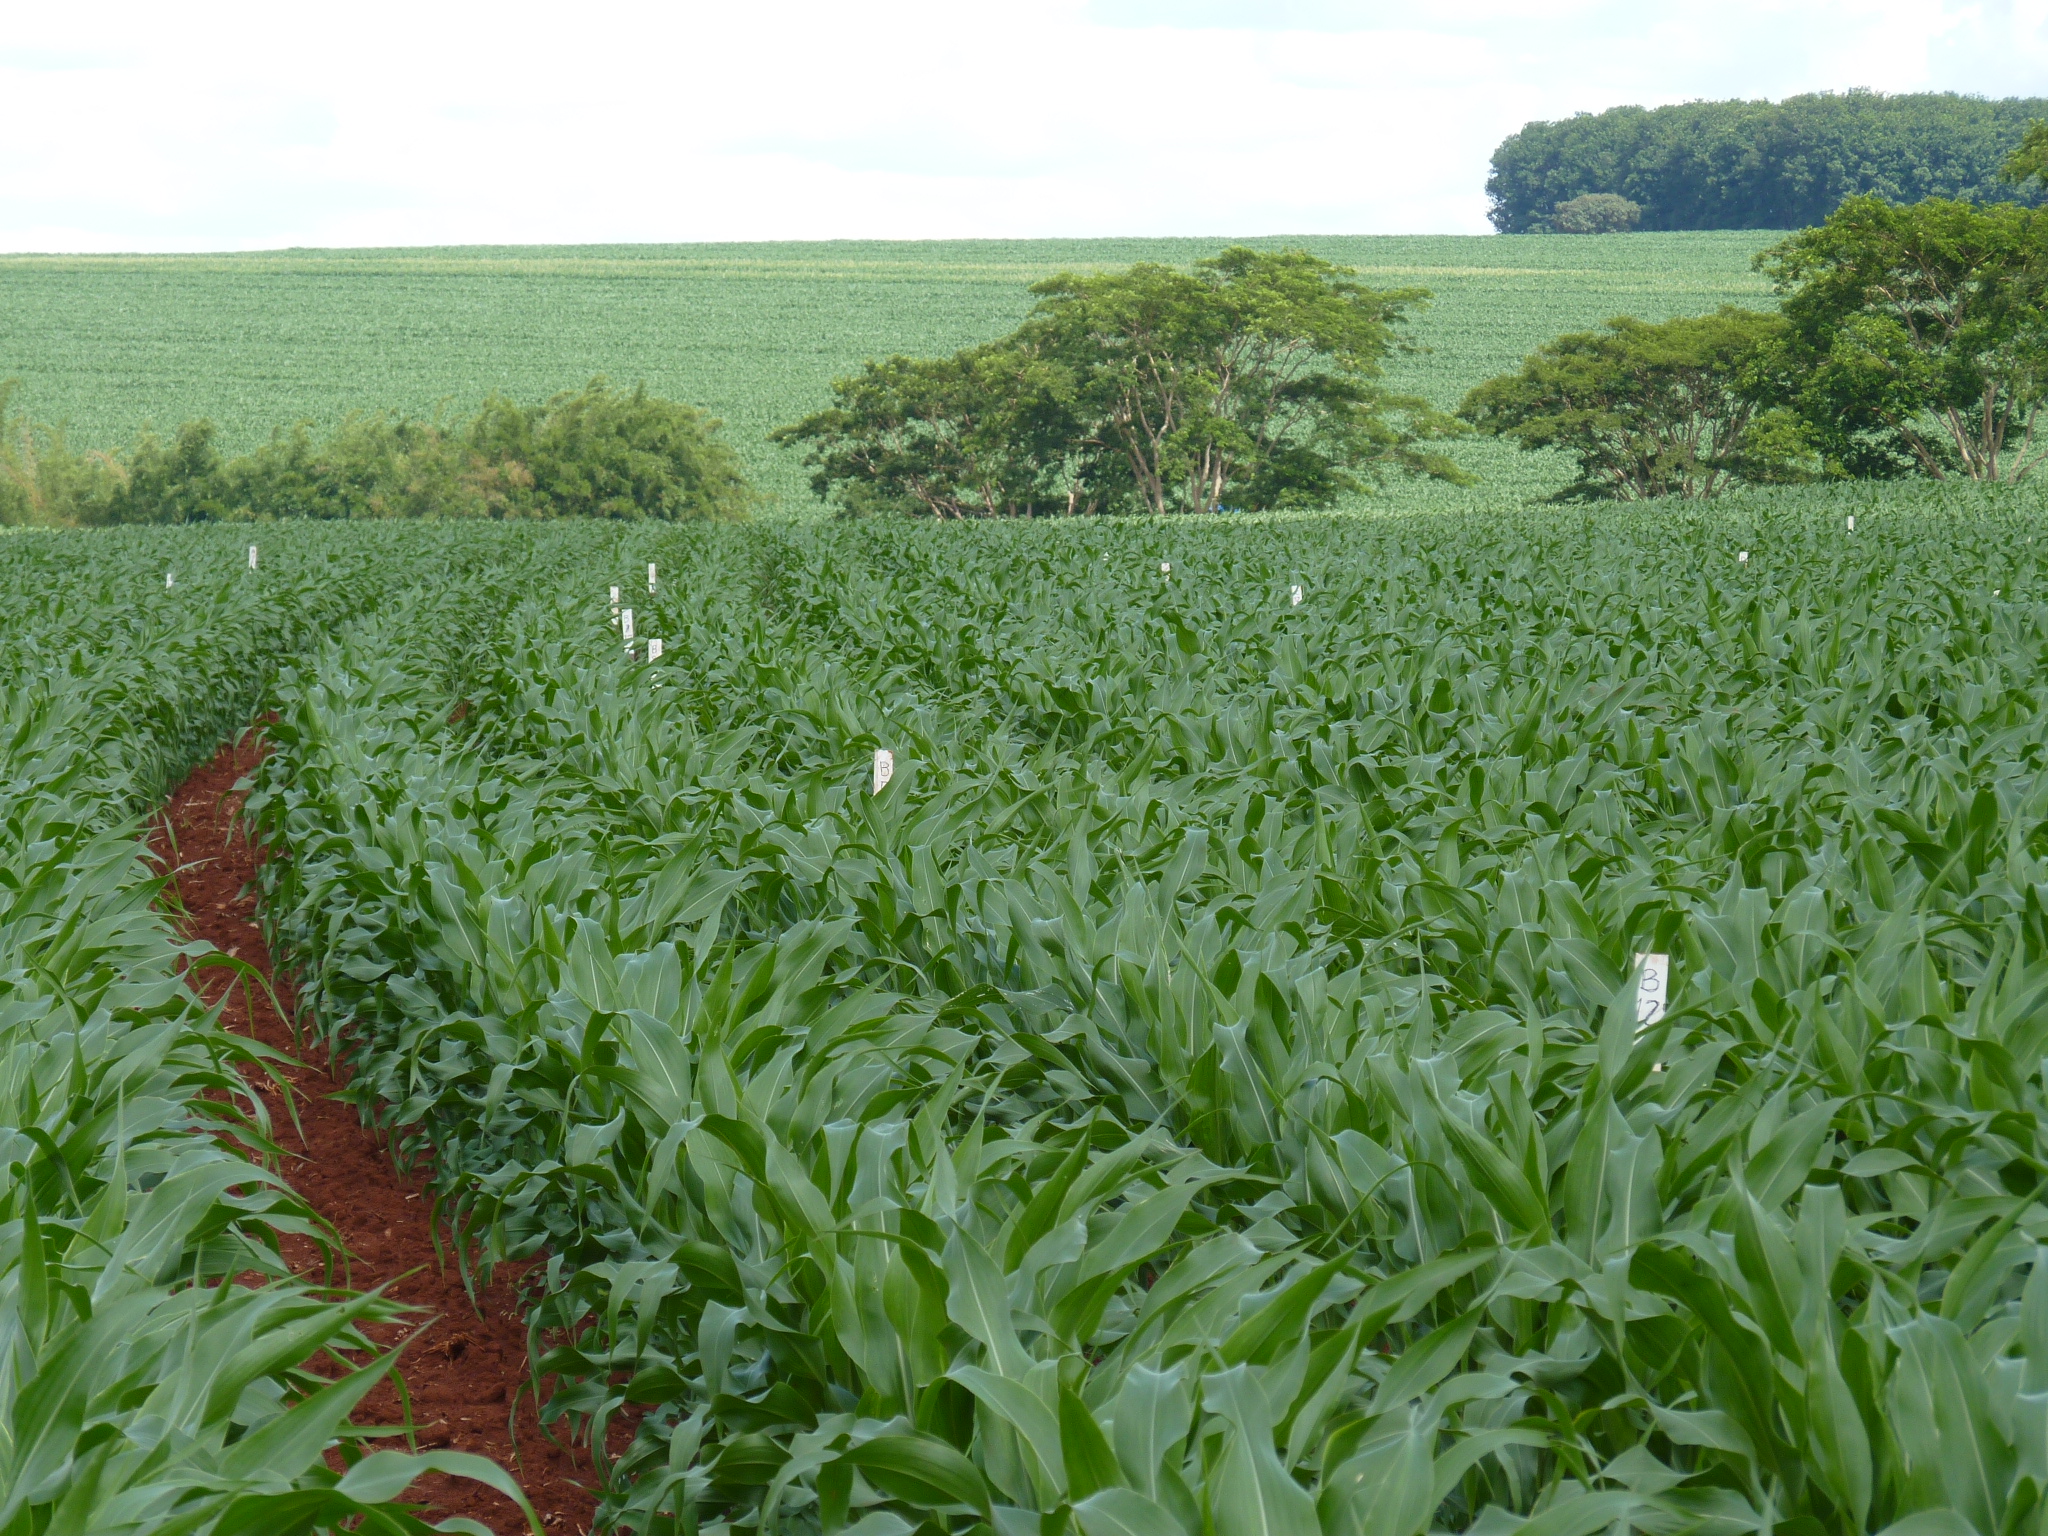 Área experimental cultivada com milho.